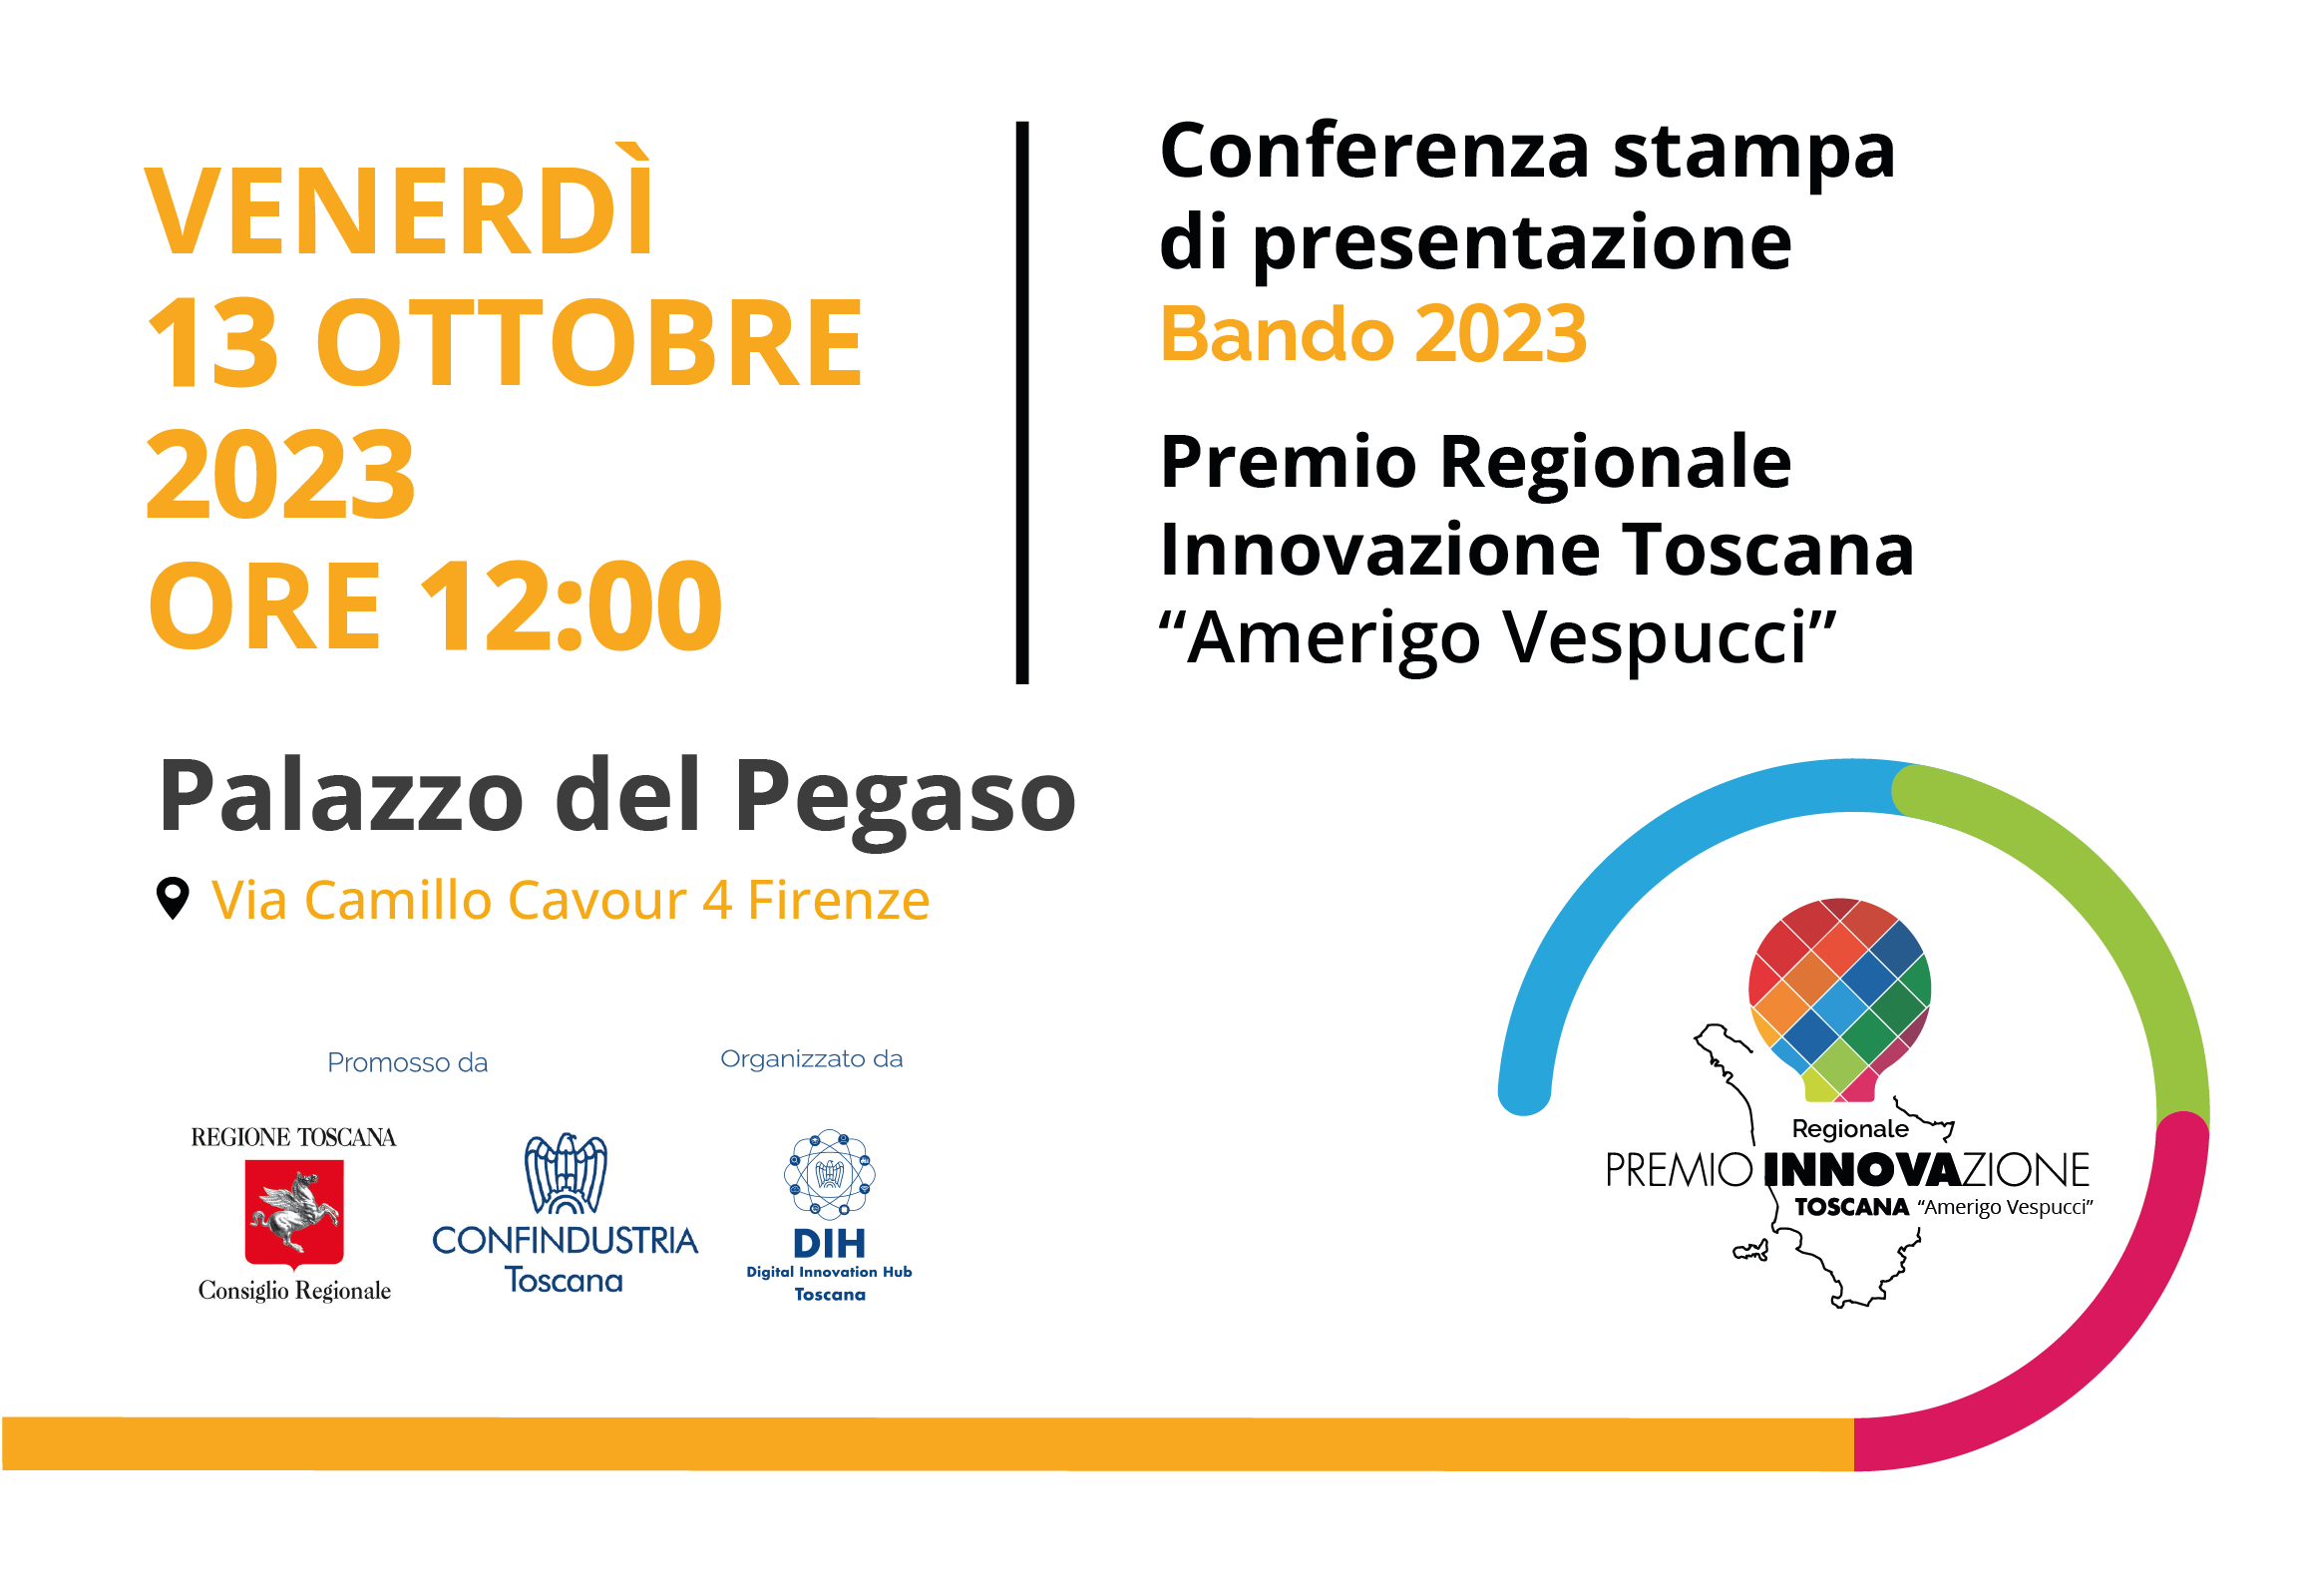 Conferenza stampa di presentazione del nuovo Bando 2023 Premio Regionale Innovazione Toscana “Amerigo Vespucci”